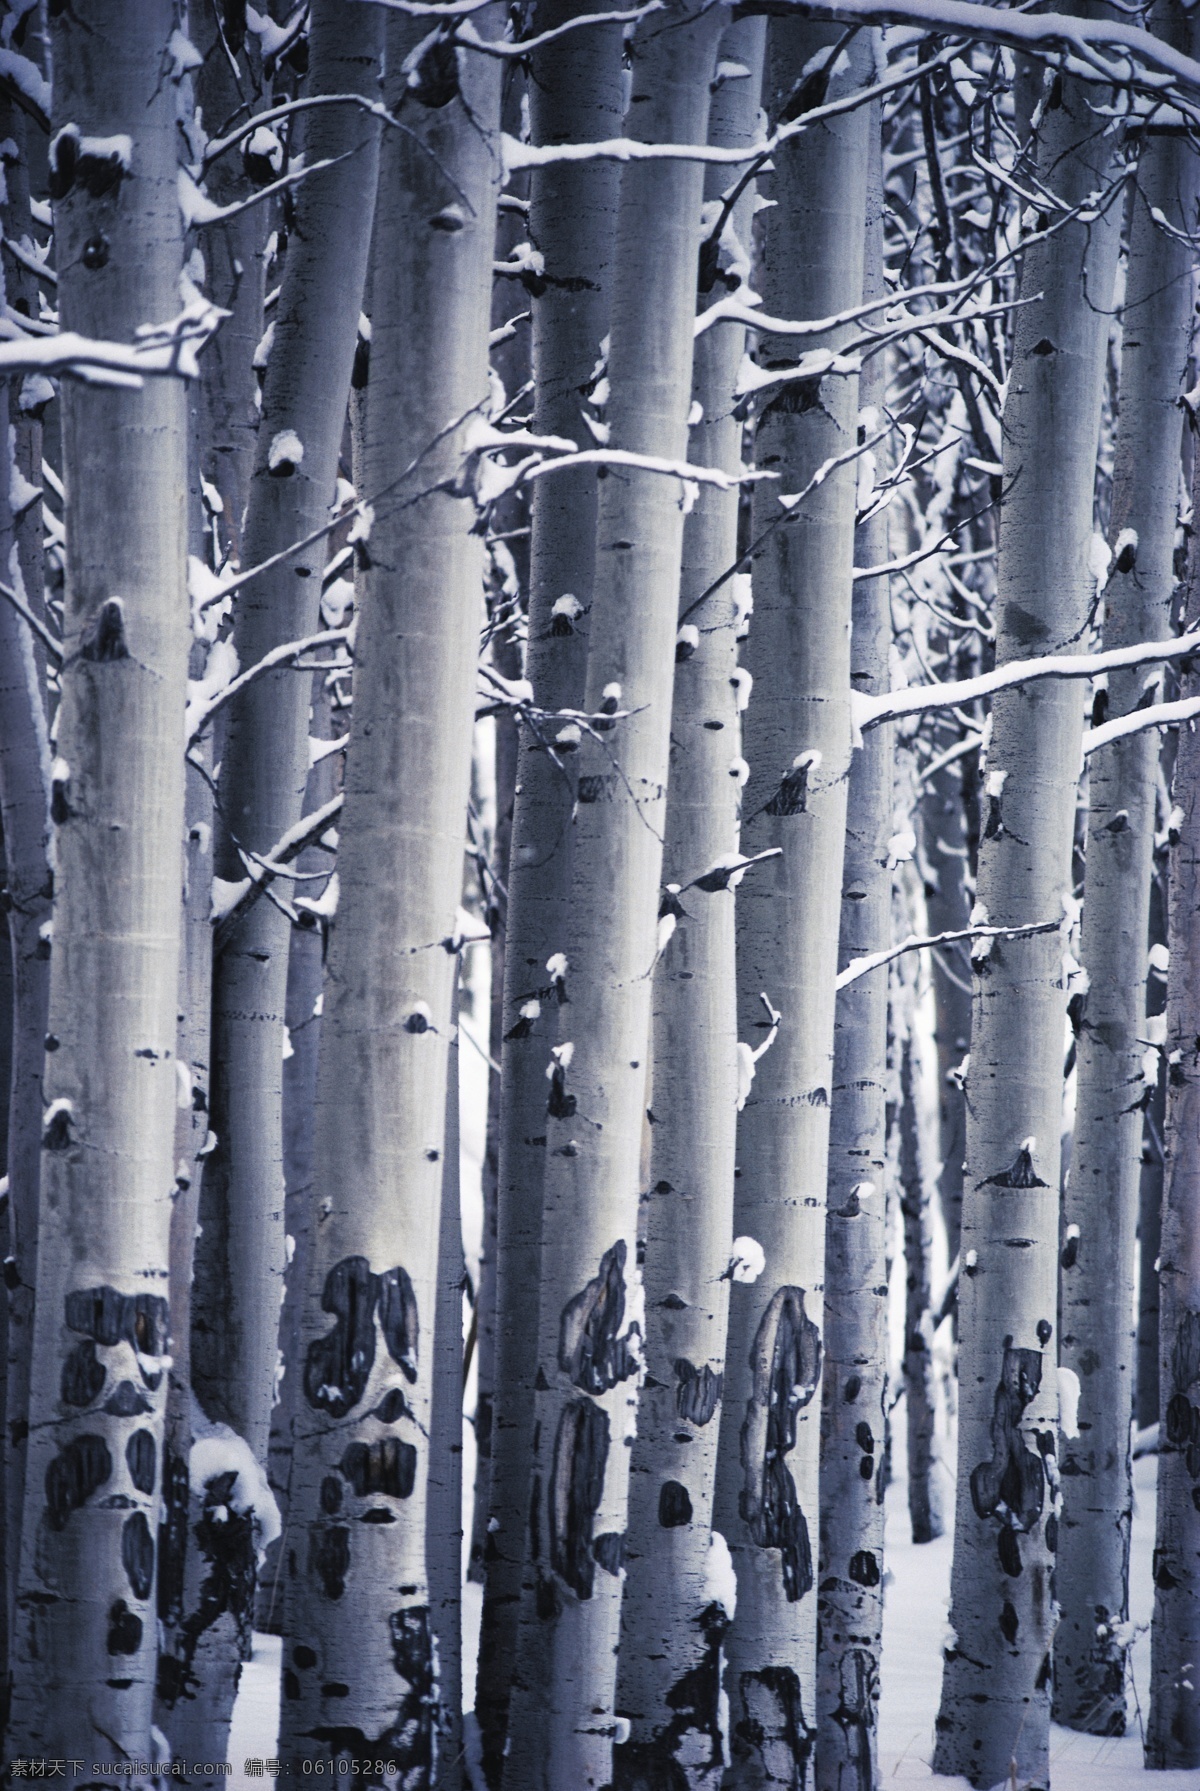 雪地 上 梧桐树 林木风景 阳光 树木 自然景观 自然风景 风景 摄影图库 大树 jpg图片 高清图片 雪 树枝 花草树木 生物世界